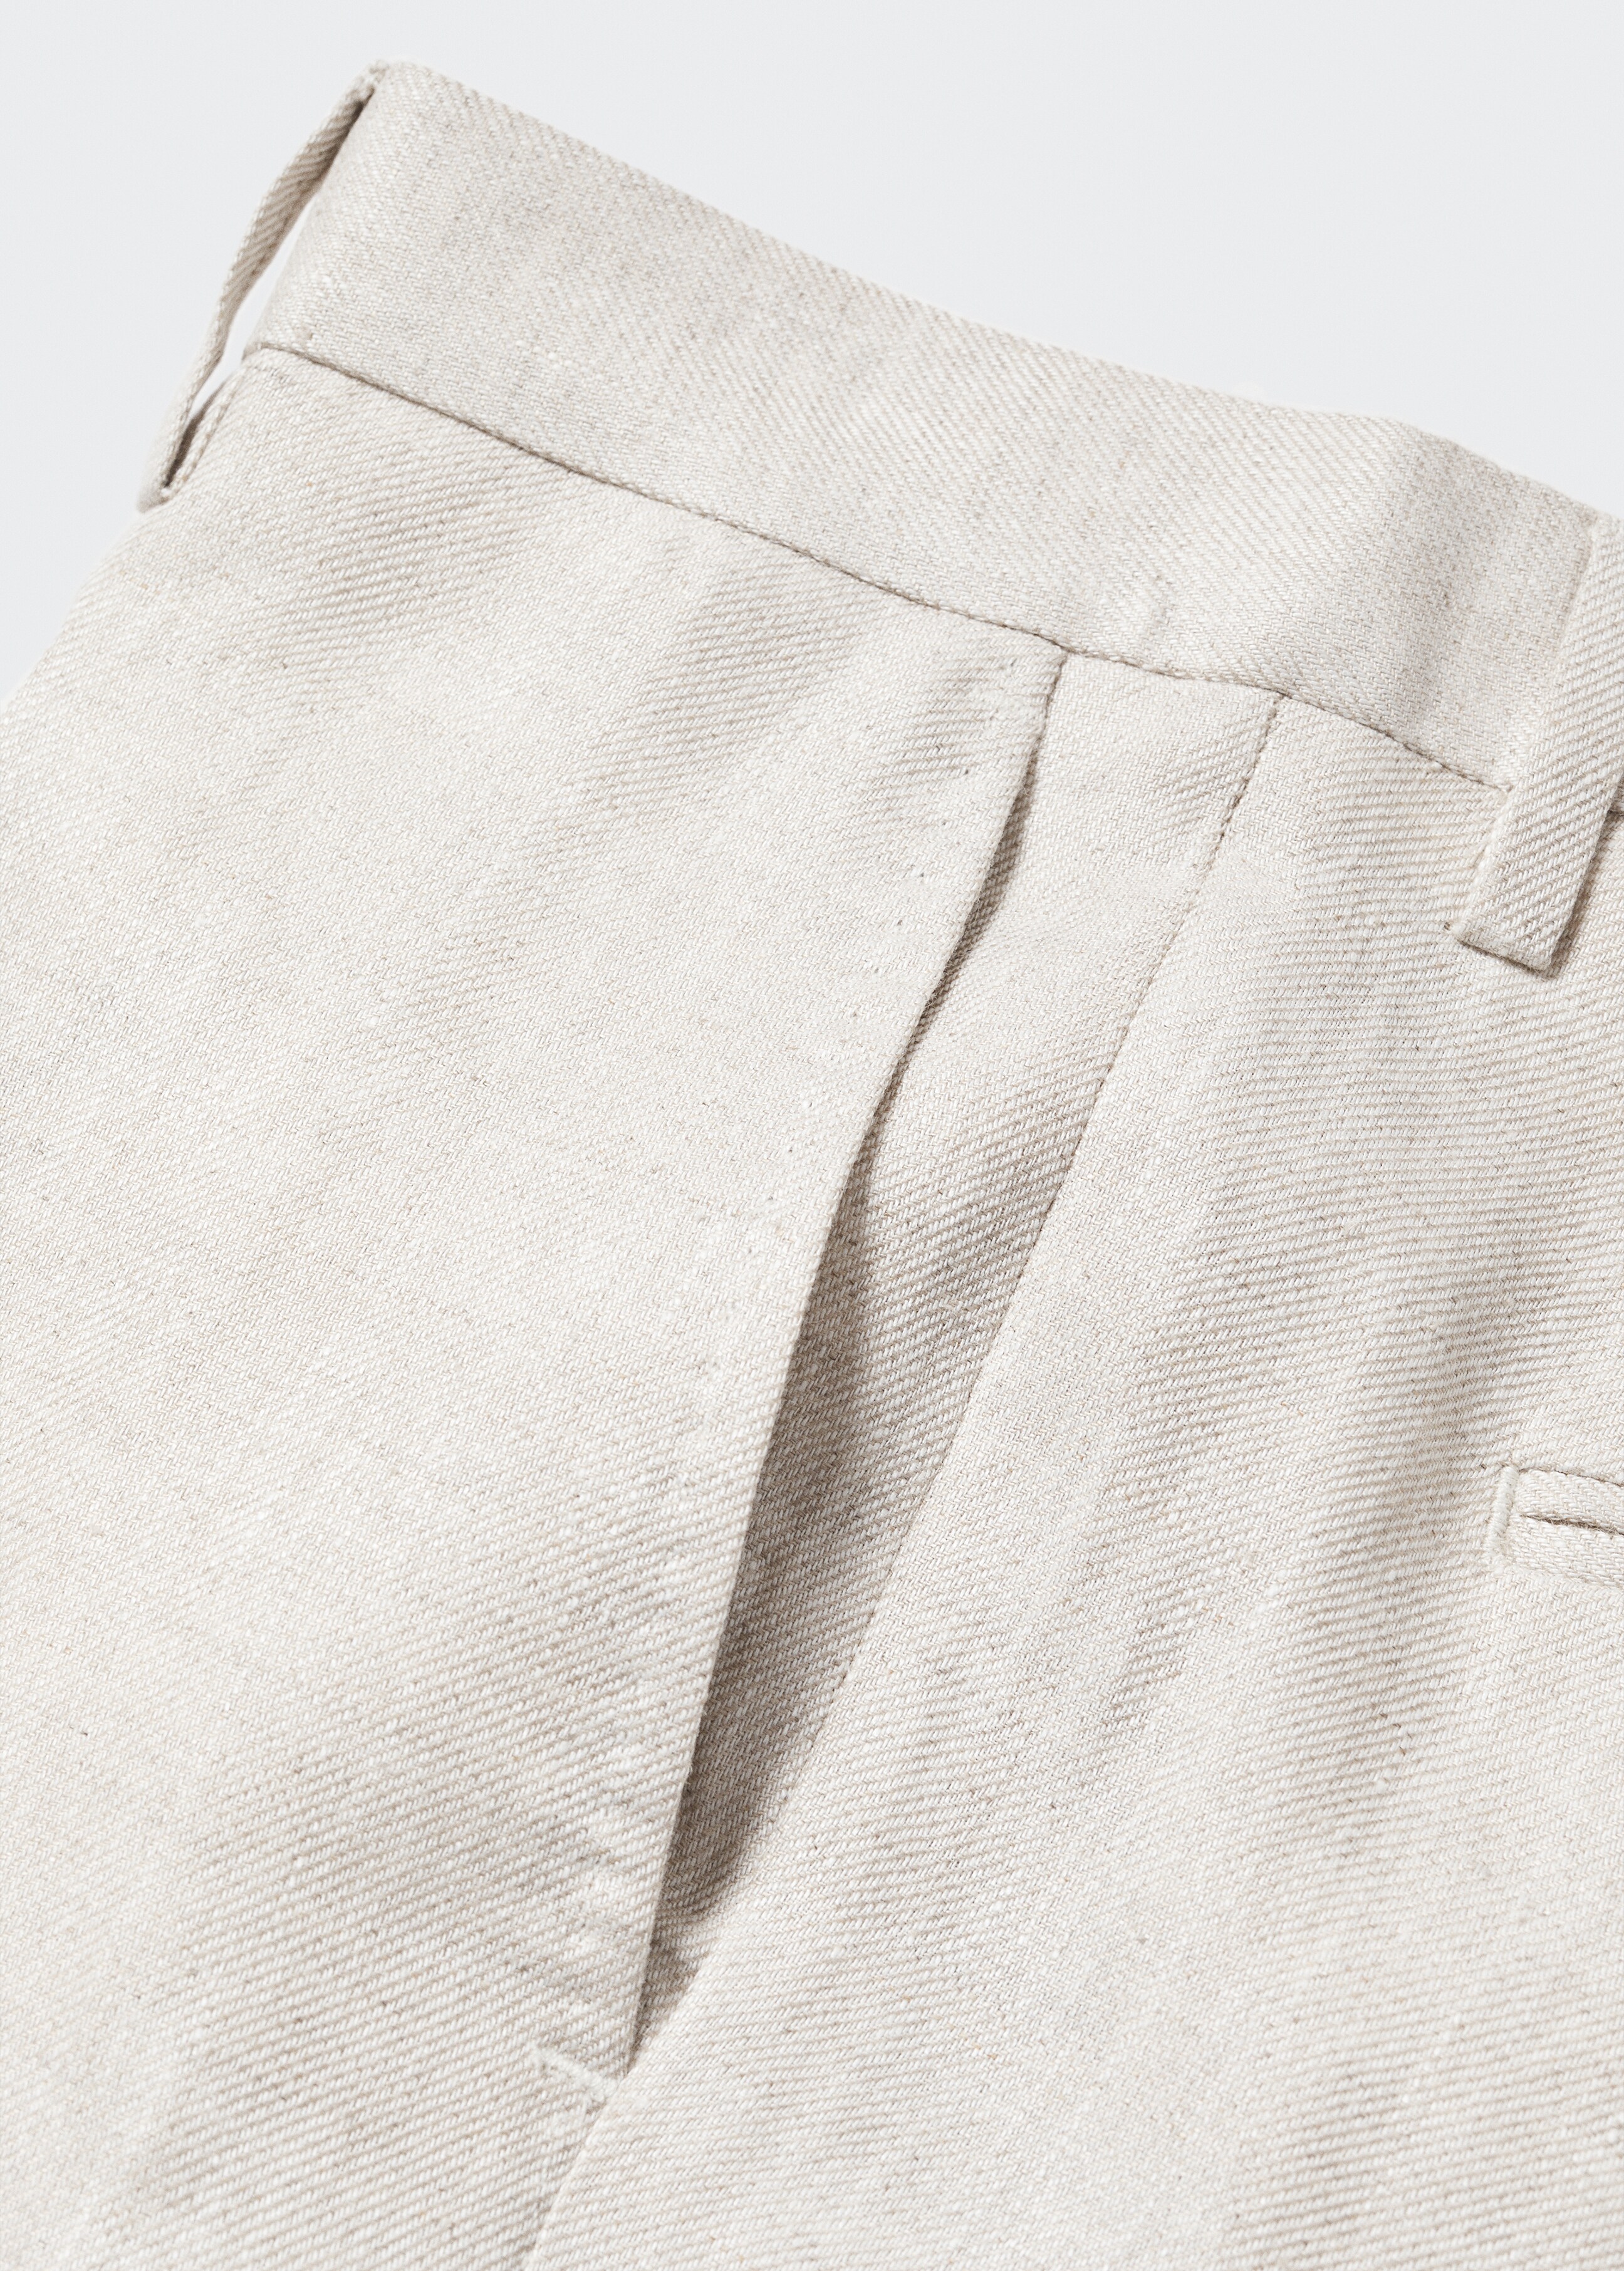 Pantalón traje 100% lino - Detalle del artículo 8